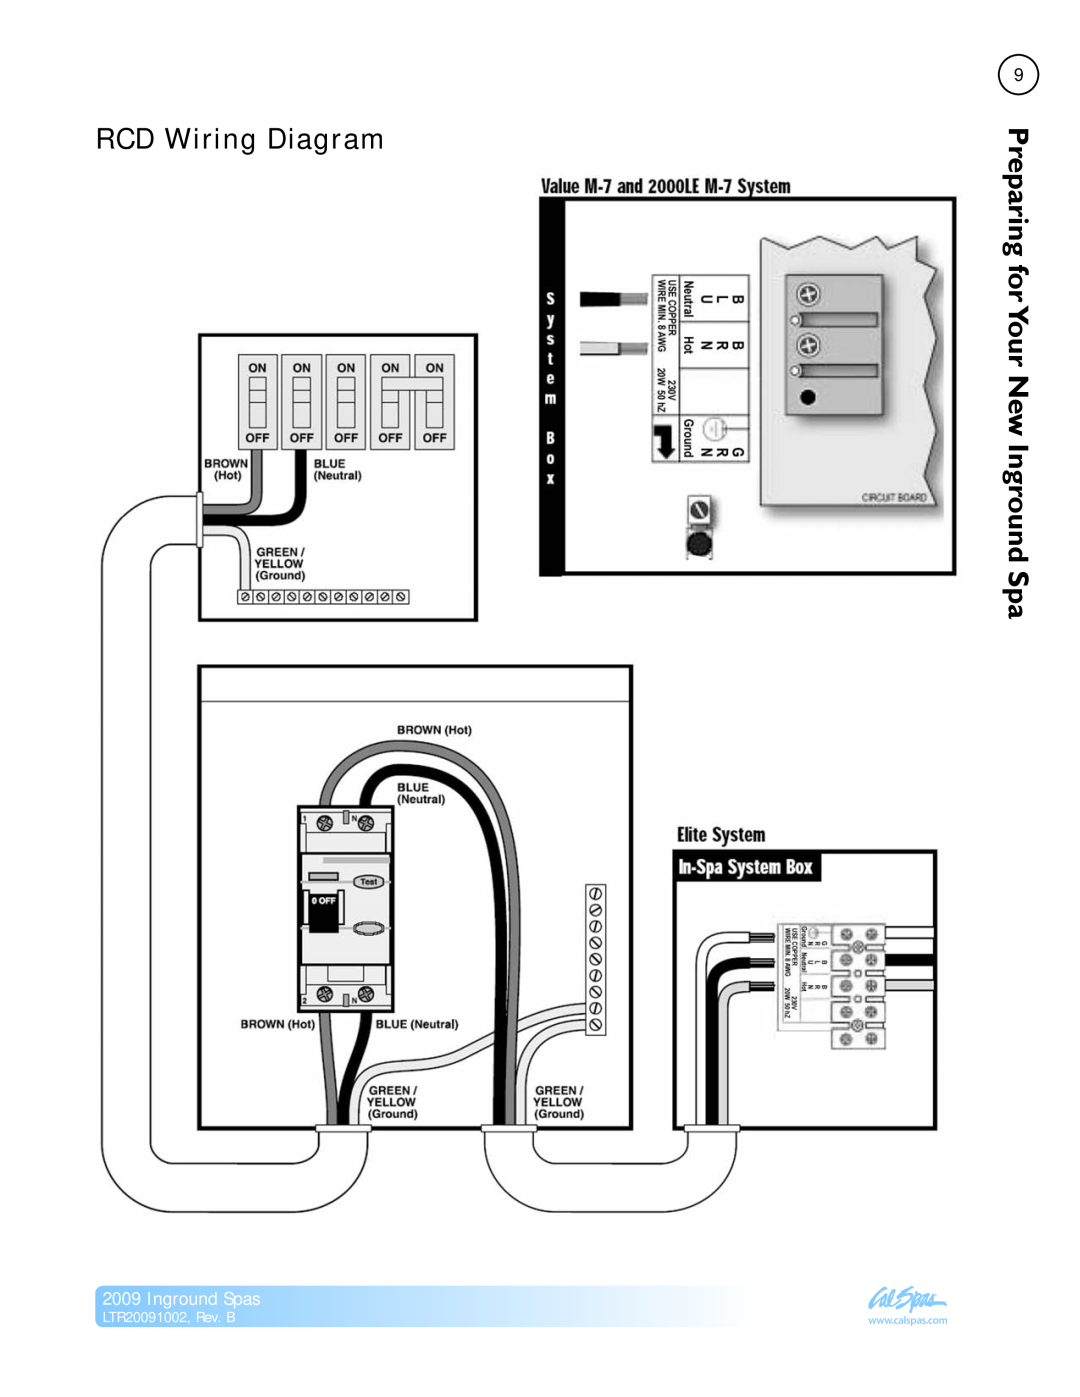 Cal Spas Inground Spas manual RCD Wiring Diagram, Your New Inground Spa, LTR20091002, Rev. B, Preparingfor 